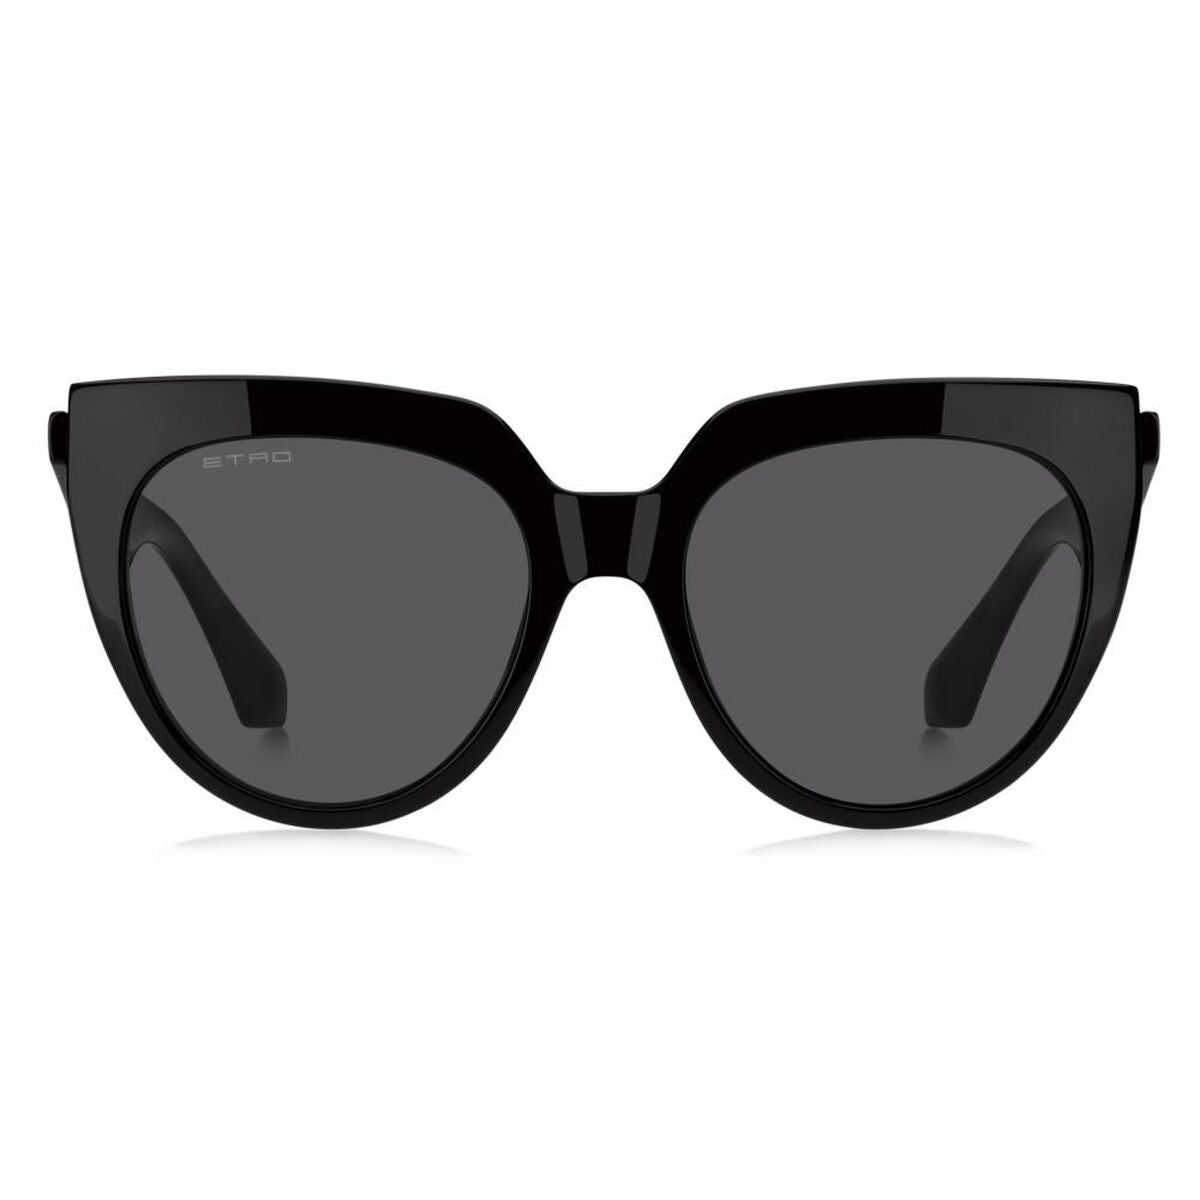 Kaufe Damensonnenbrille Etro ETRO 0003_S bei AWK Flagship um € 204.00